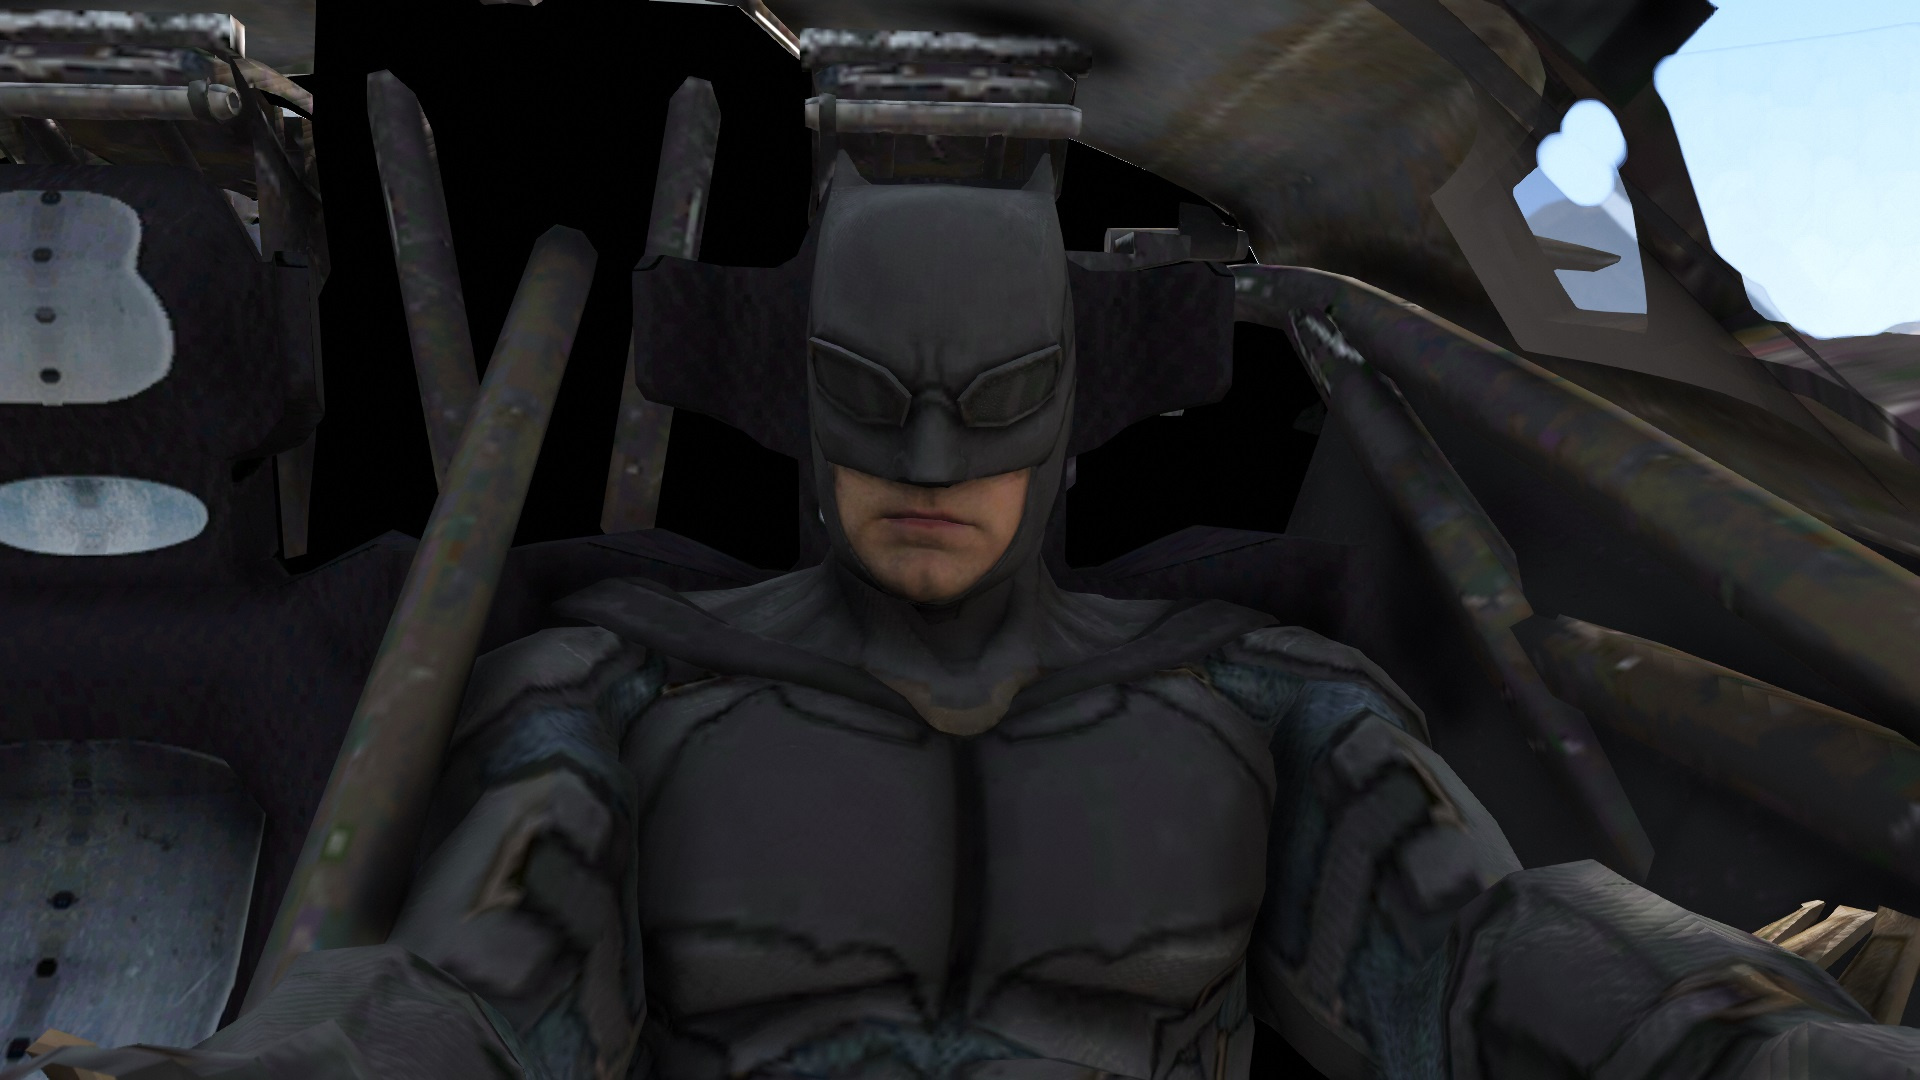 Batman Justice League Injustice 2 